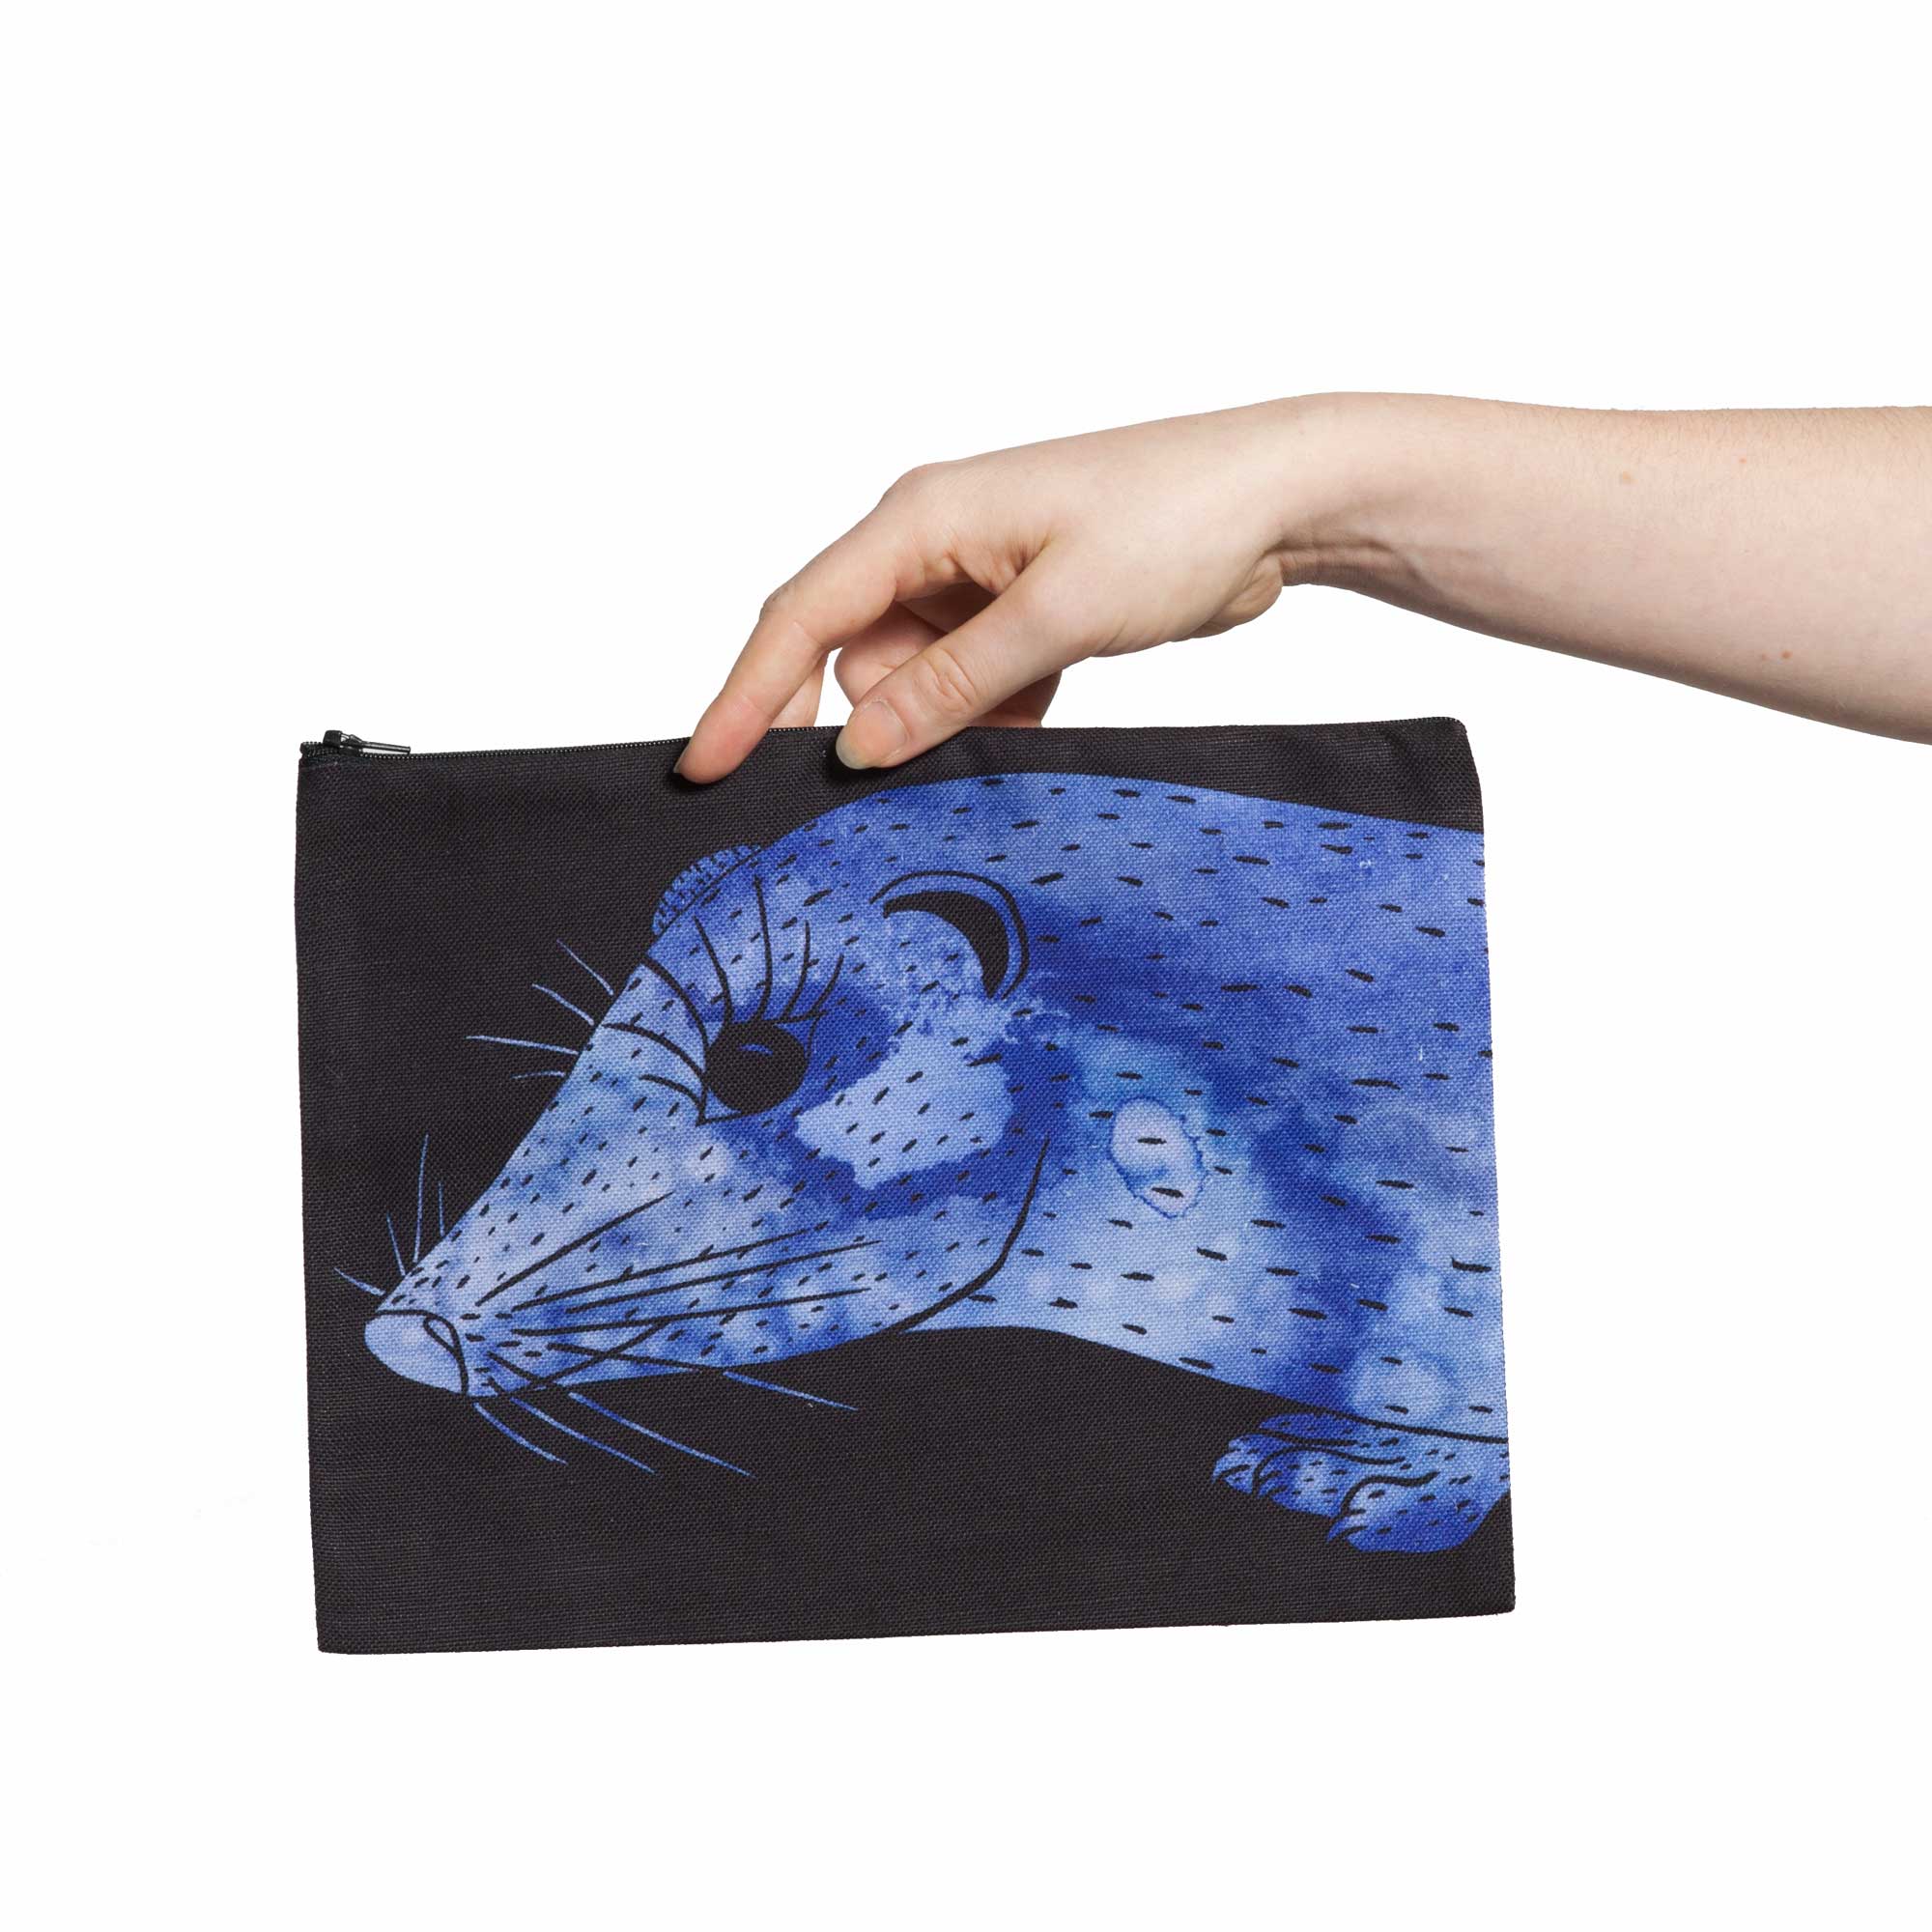 Une pochette taille L de la collection Fourrure de Céline Dominiak, avec une tête de vison bleu foncé sur fond noir, recto